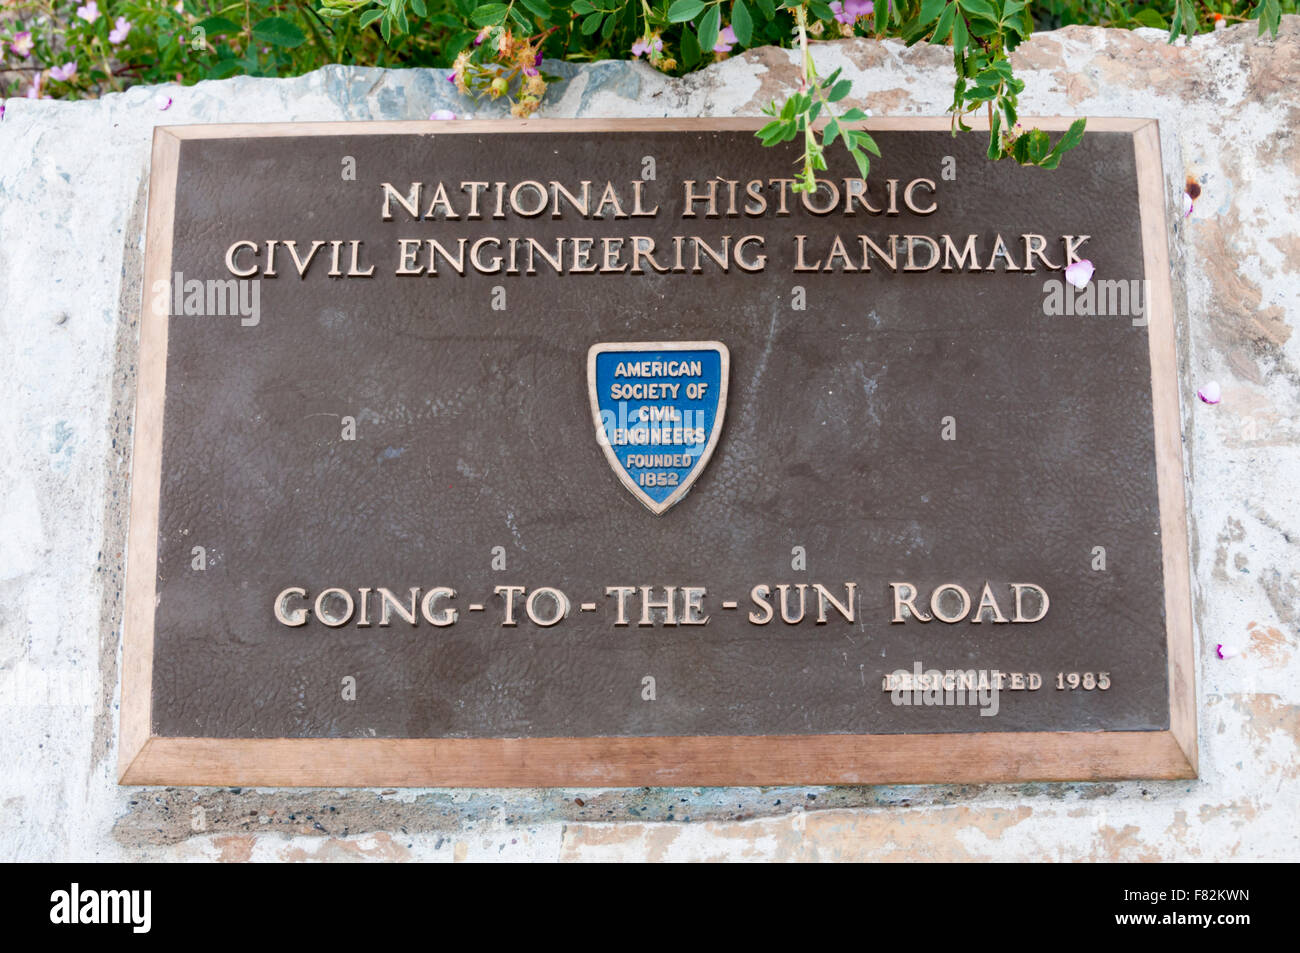 Désignation de l'enregistrement de la plaque-Going-To The-Sun Road, dans le parc national des Glaciers comme monument historique national de génie civil. Banque D'Images